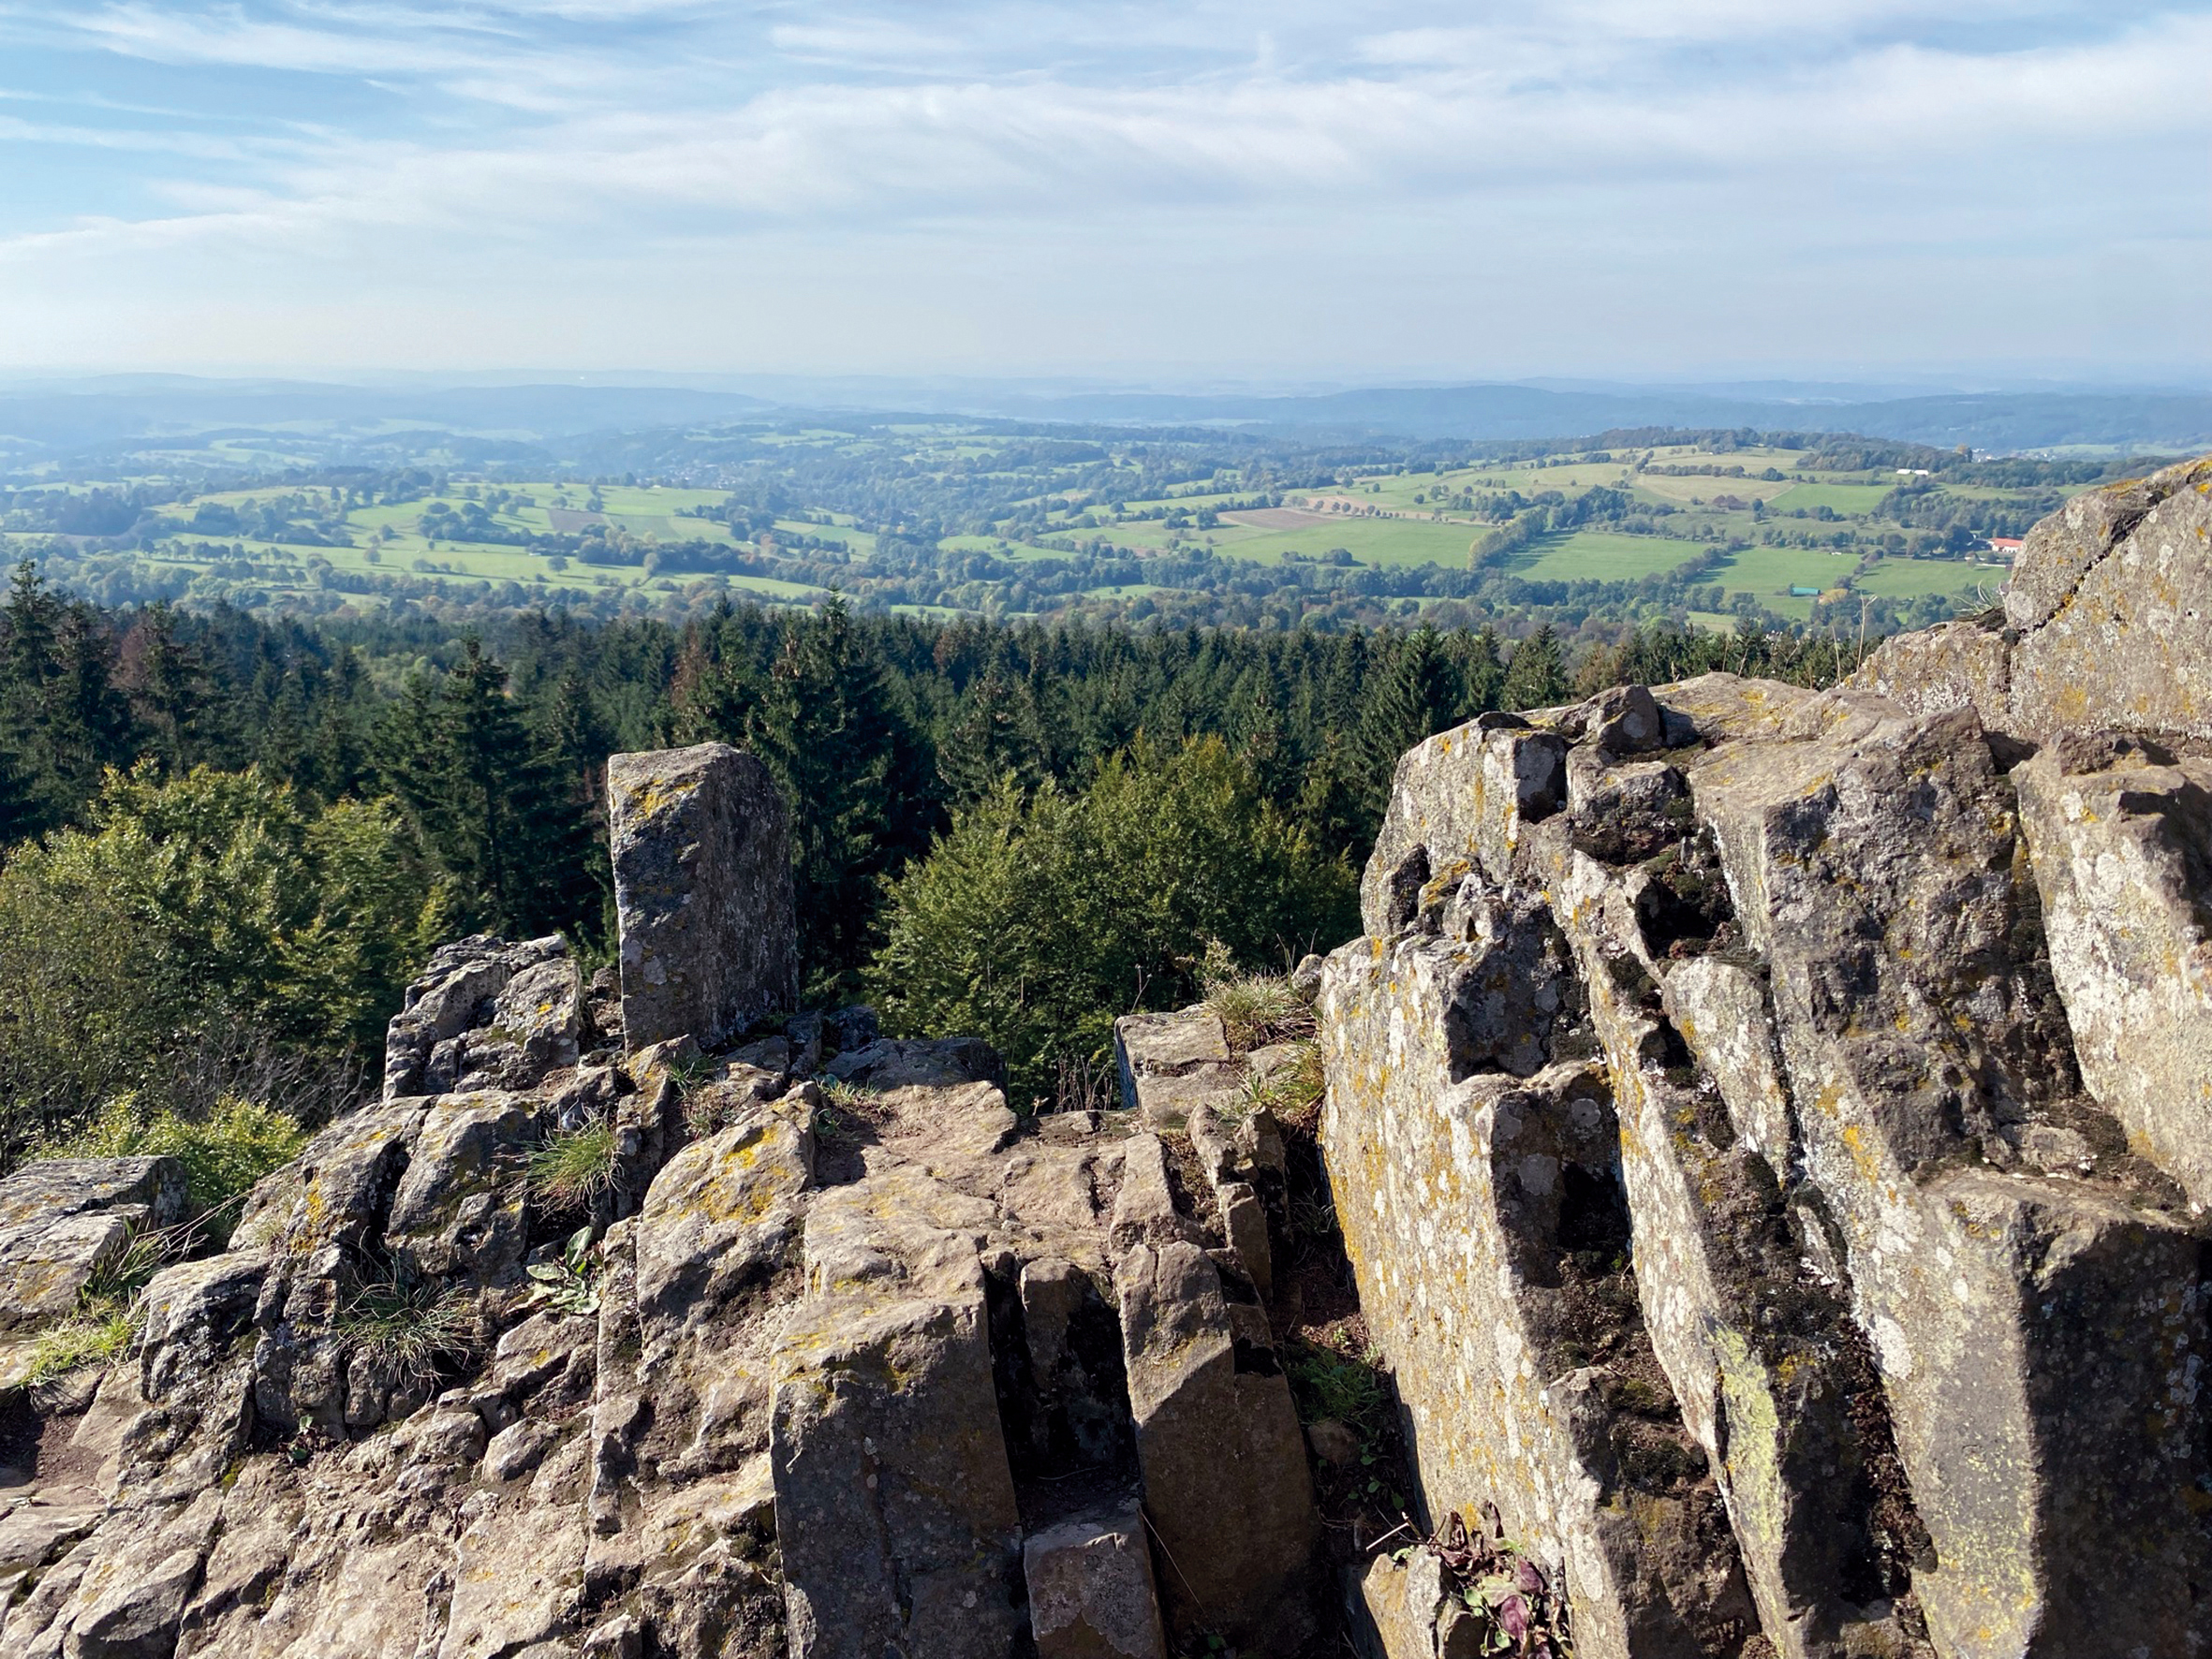 Der Blick vom schroffen Basaltfelsen des Geotopes Bilstein im hessischen Vogelsberg geht weit über das geschwungene Land der Vulkanregion. Die sommerlich grünen Felder, Wiesen und Wälder stehen im Kontrast zum braun-grauen Basaltgestein des Berges Bilstein.